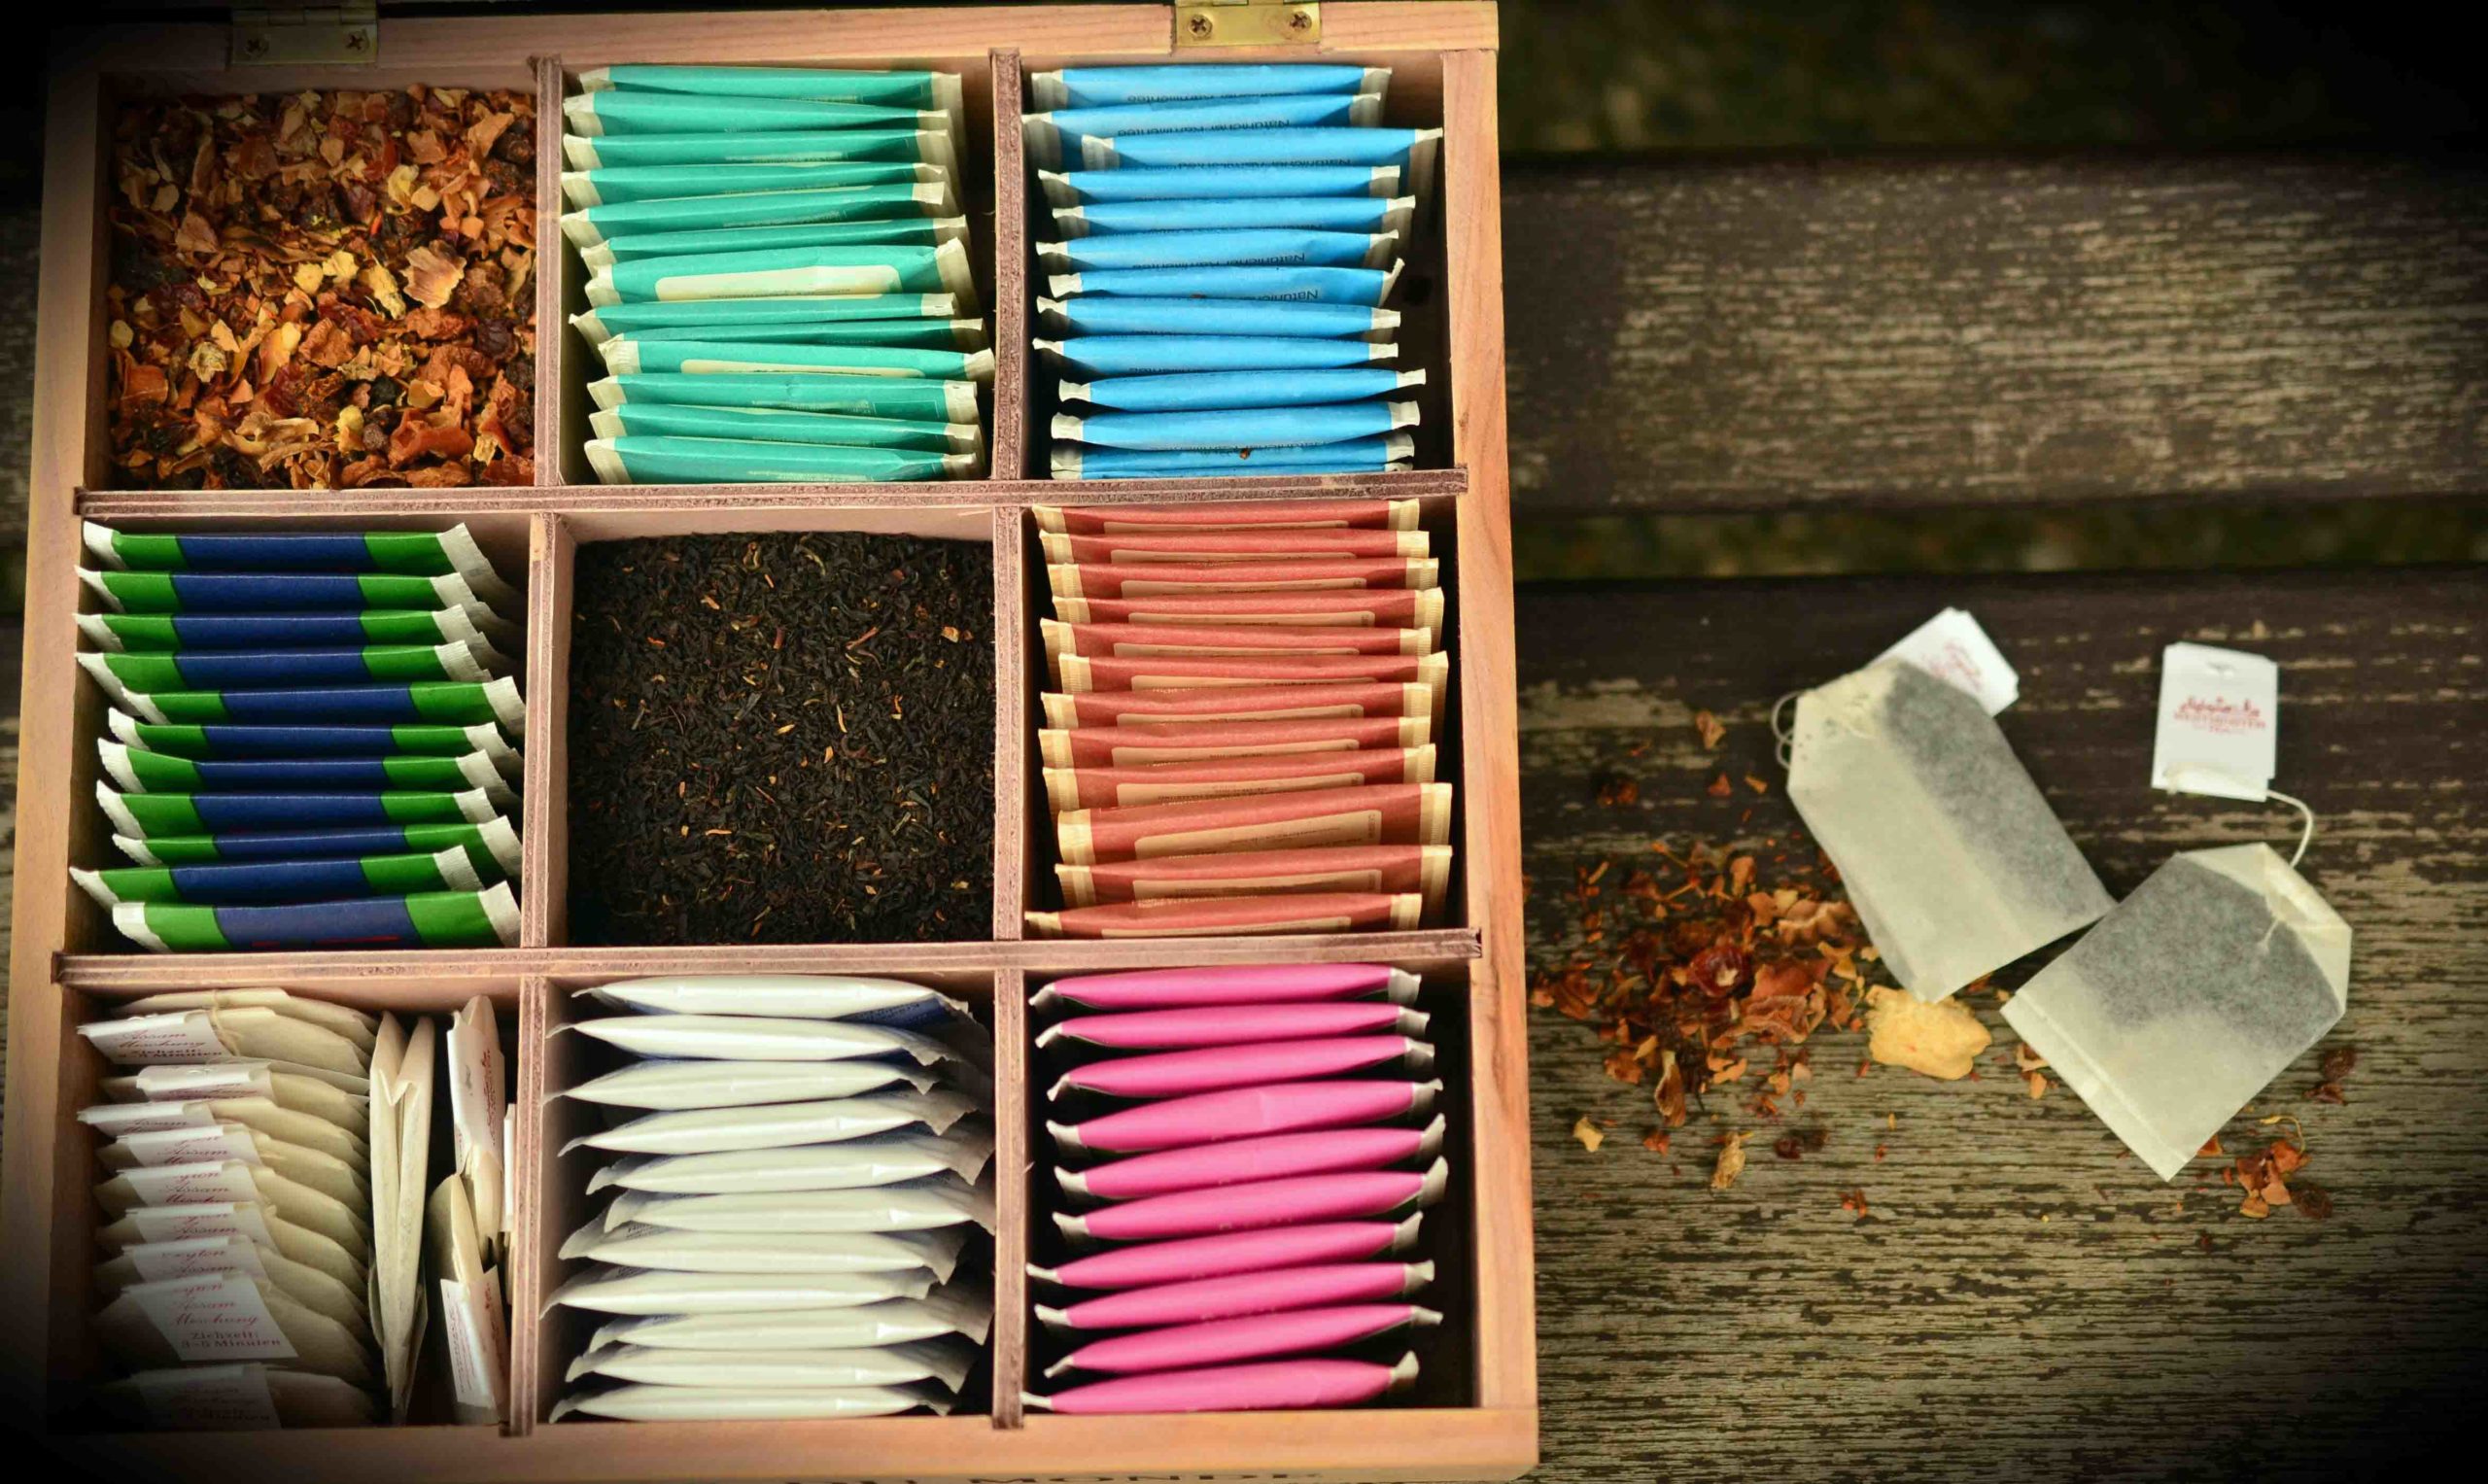 Cinq raisons de ne pas jeter les sachets de thé usagés